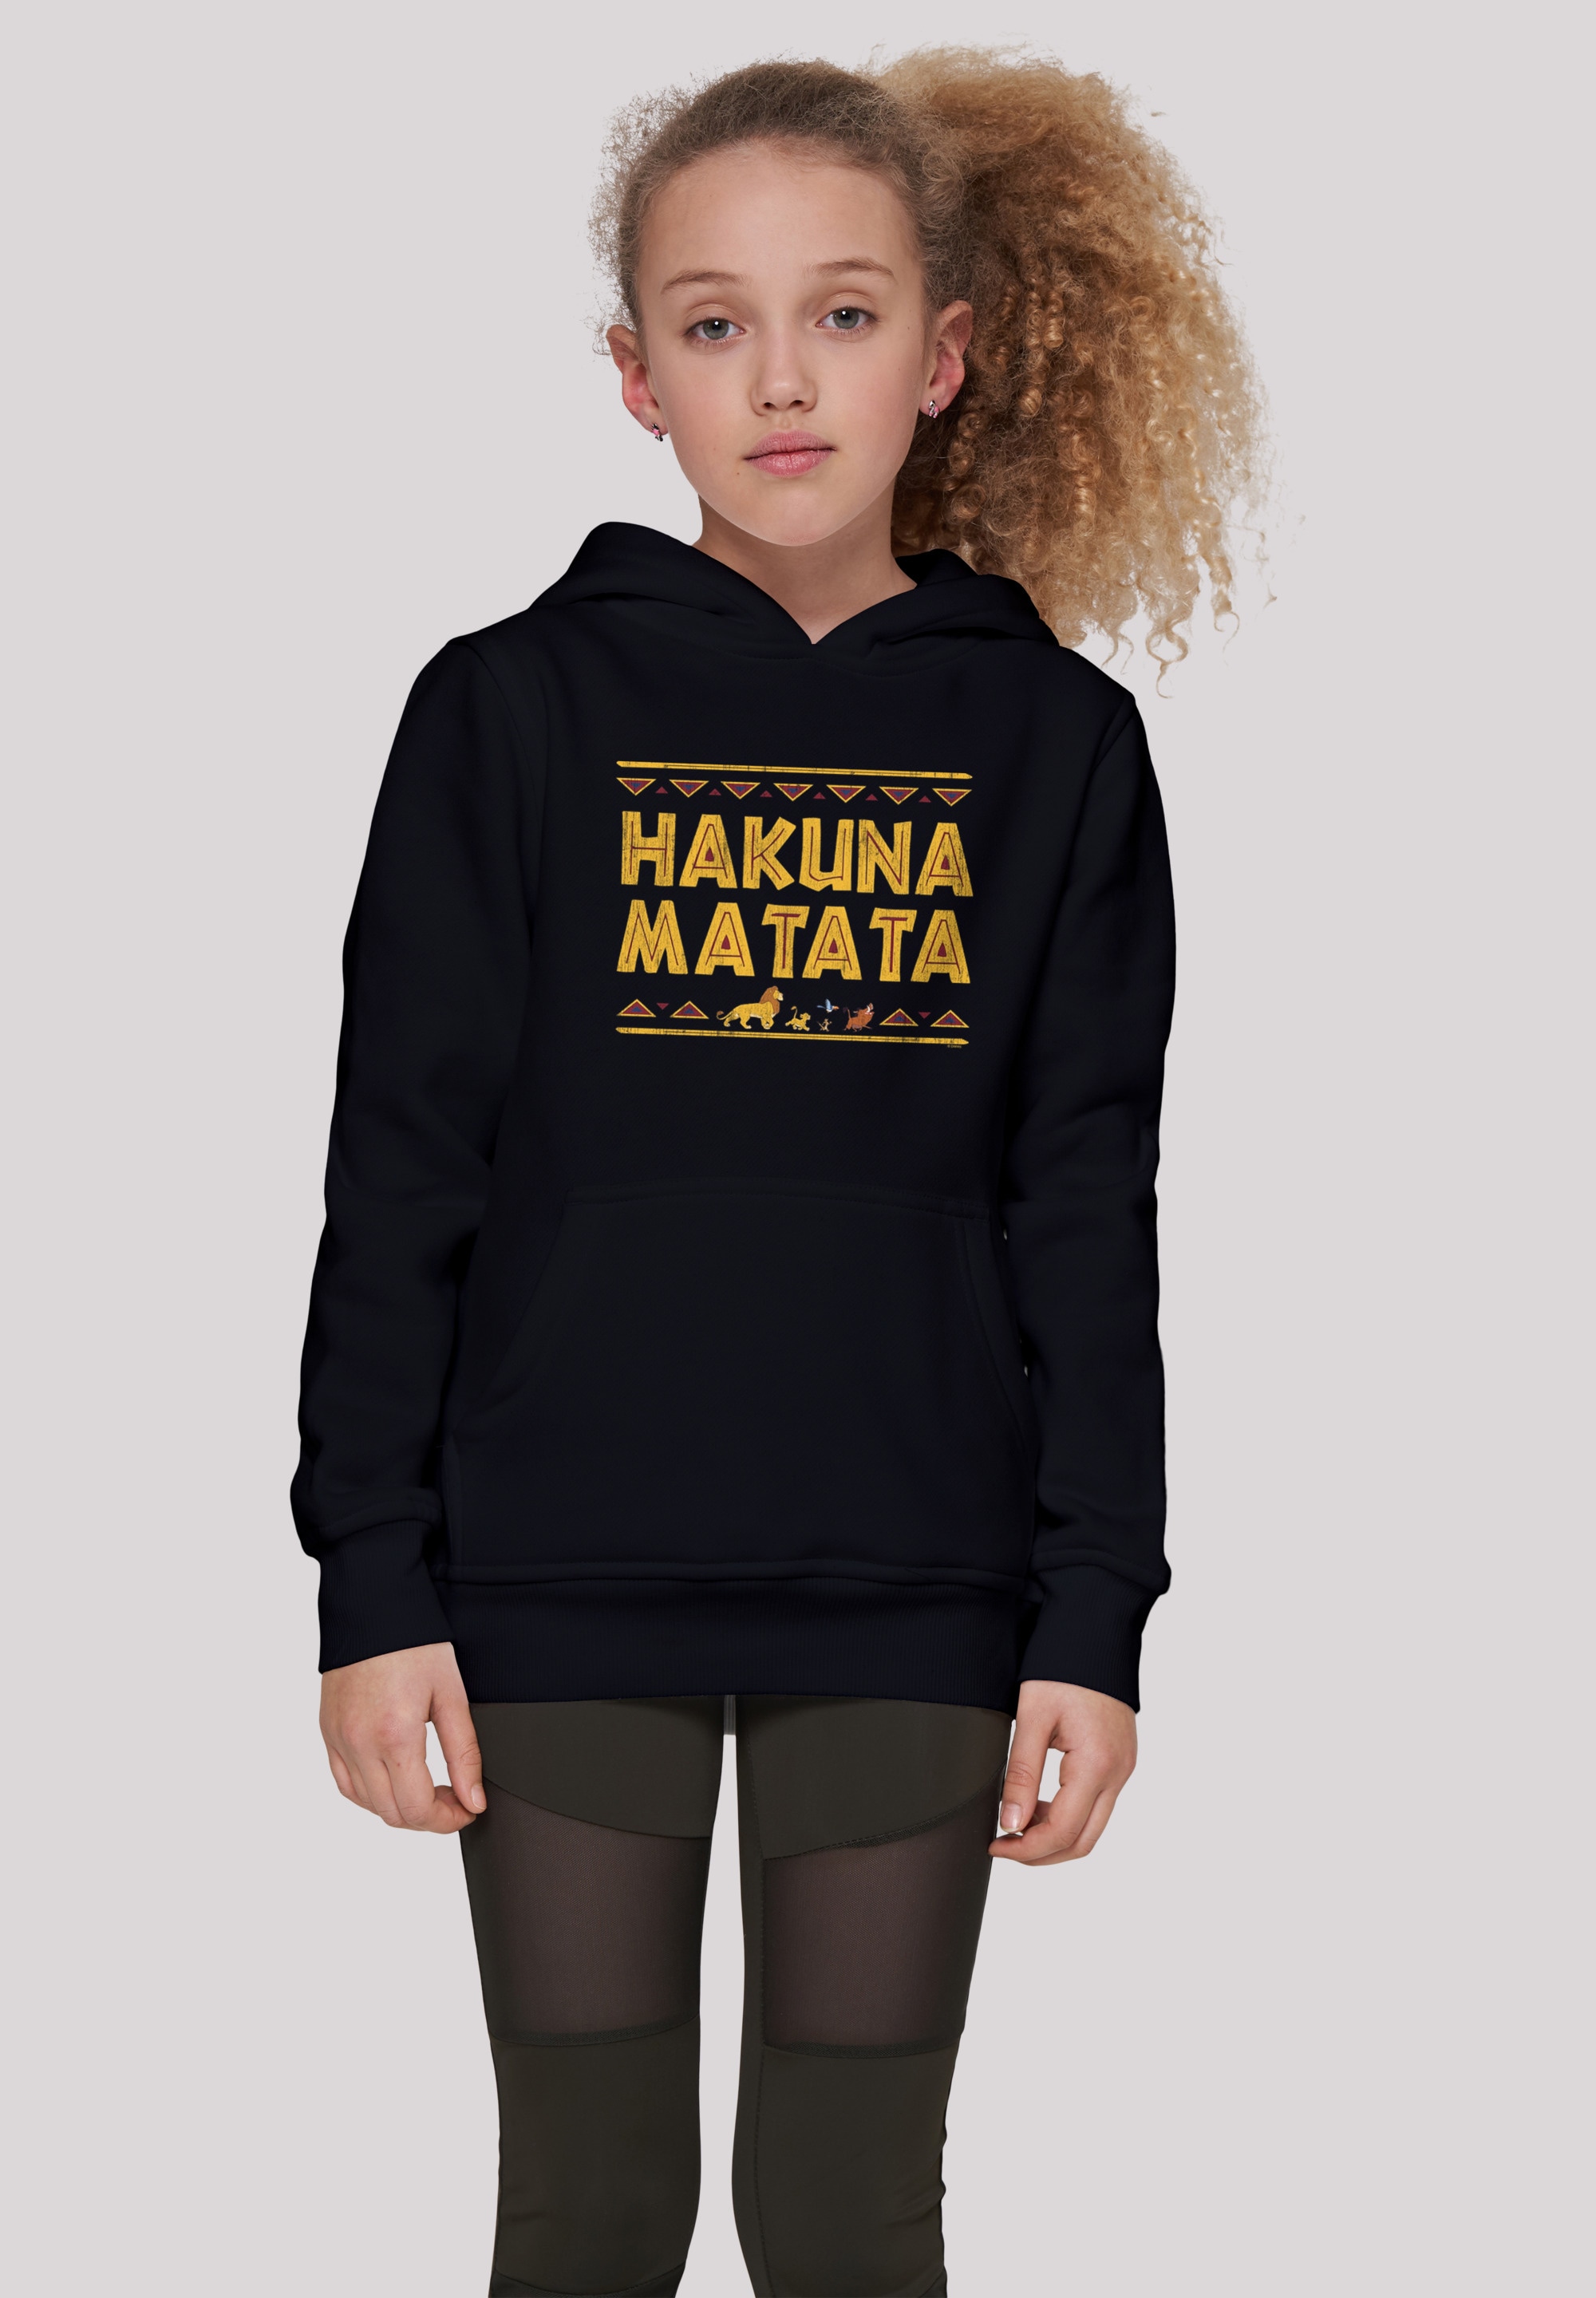 | Matata«, der König Unisex »Disney bestellen Löwen BAUR Kinder,Premium F4NT4STIC Hakuna Merch,Jungen,Mädchen,Bedruckt Sweatshirt